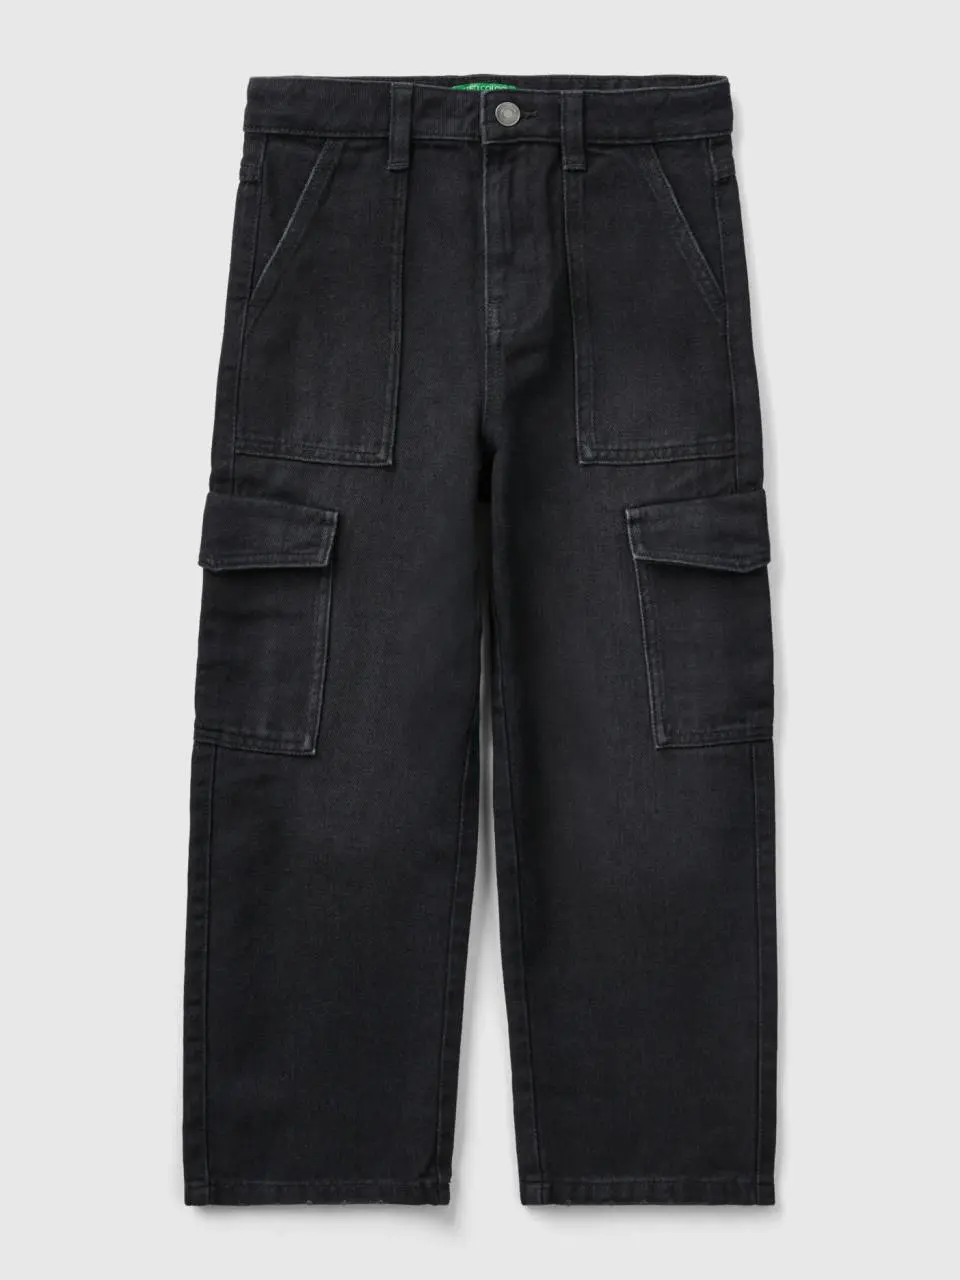 Benetton "eco-recycle" denim cargo jeans. 1